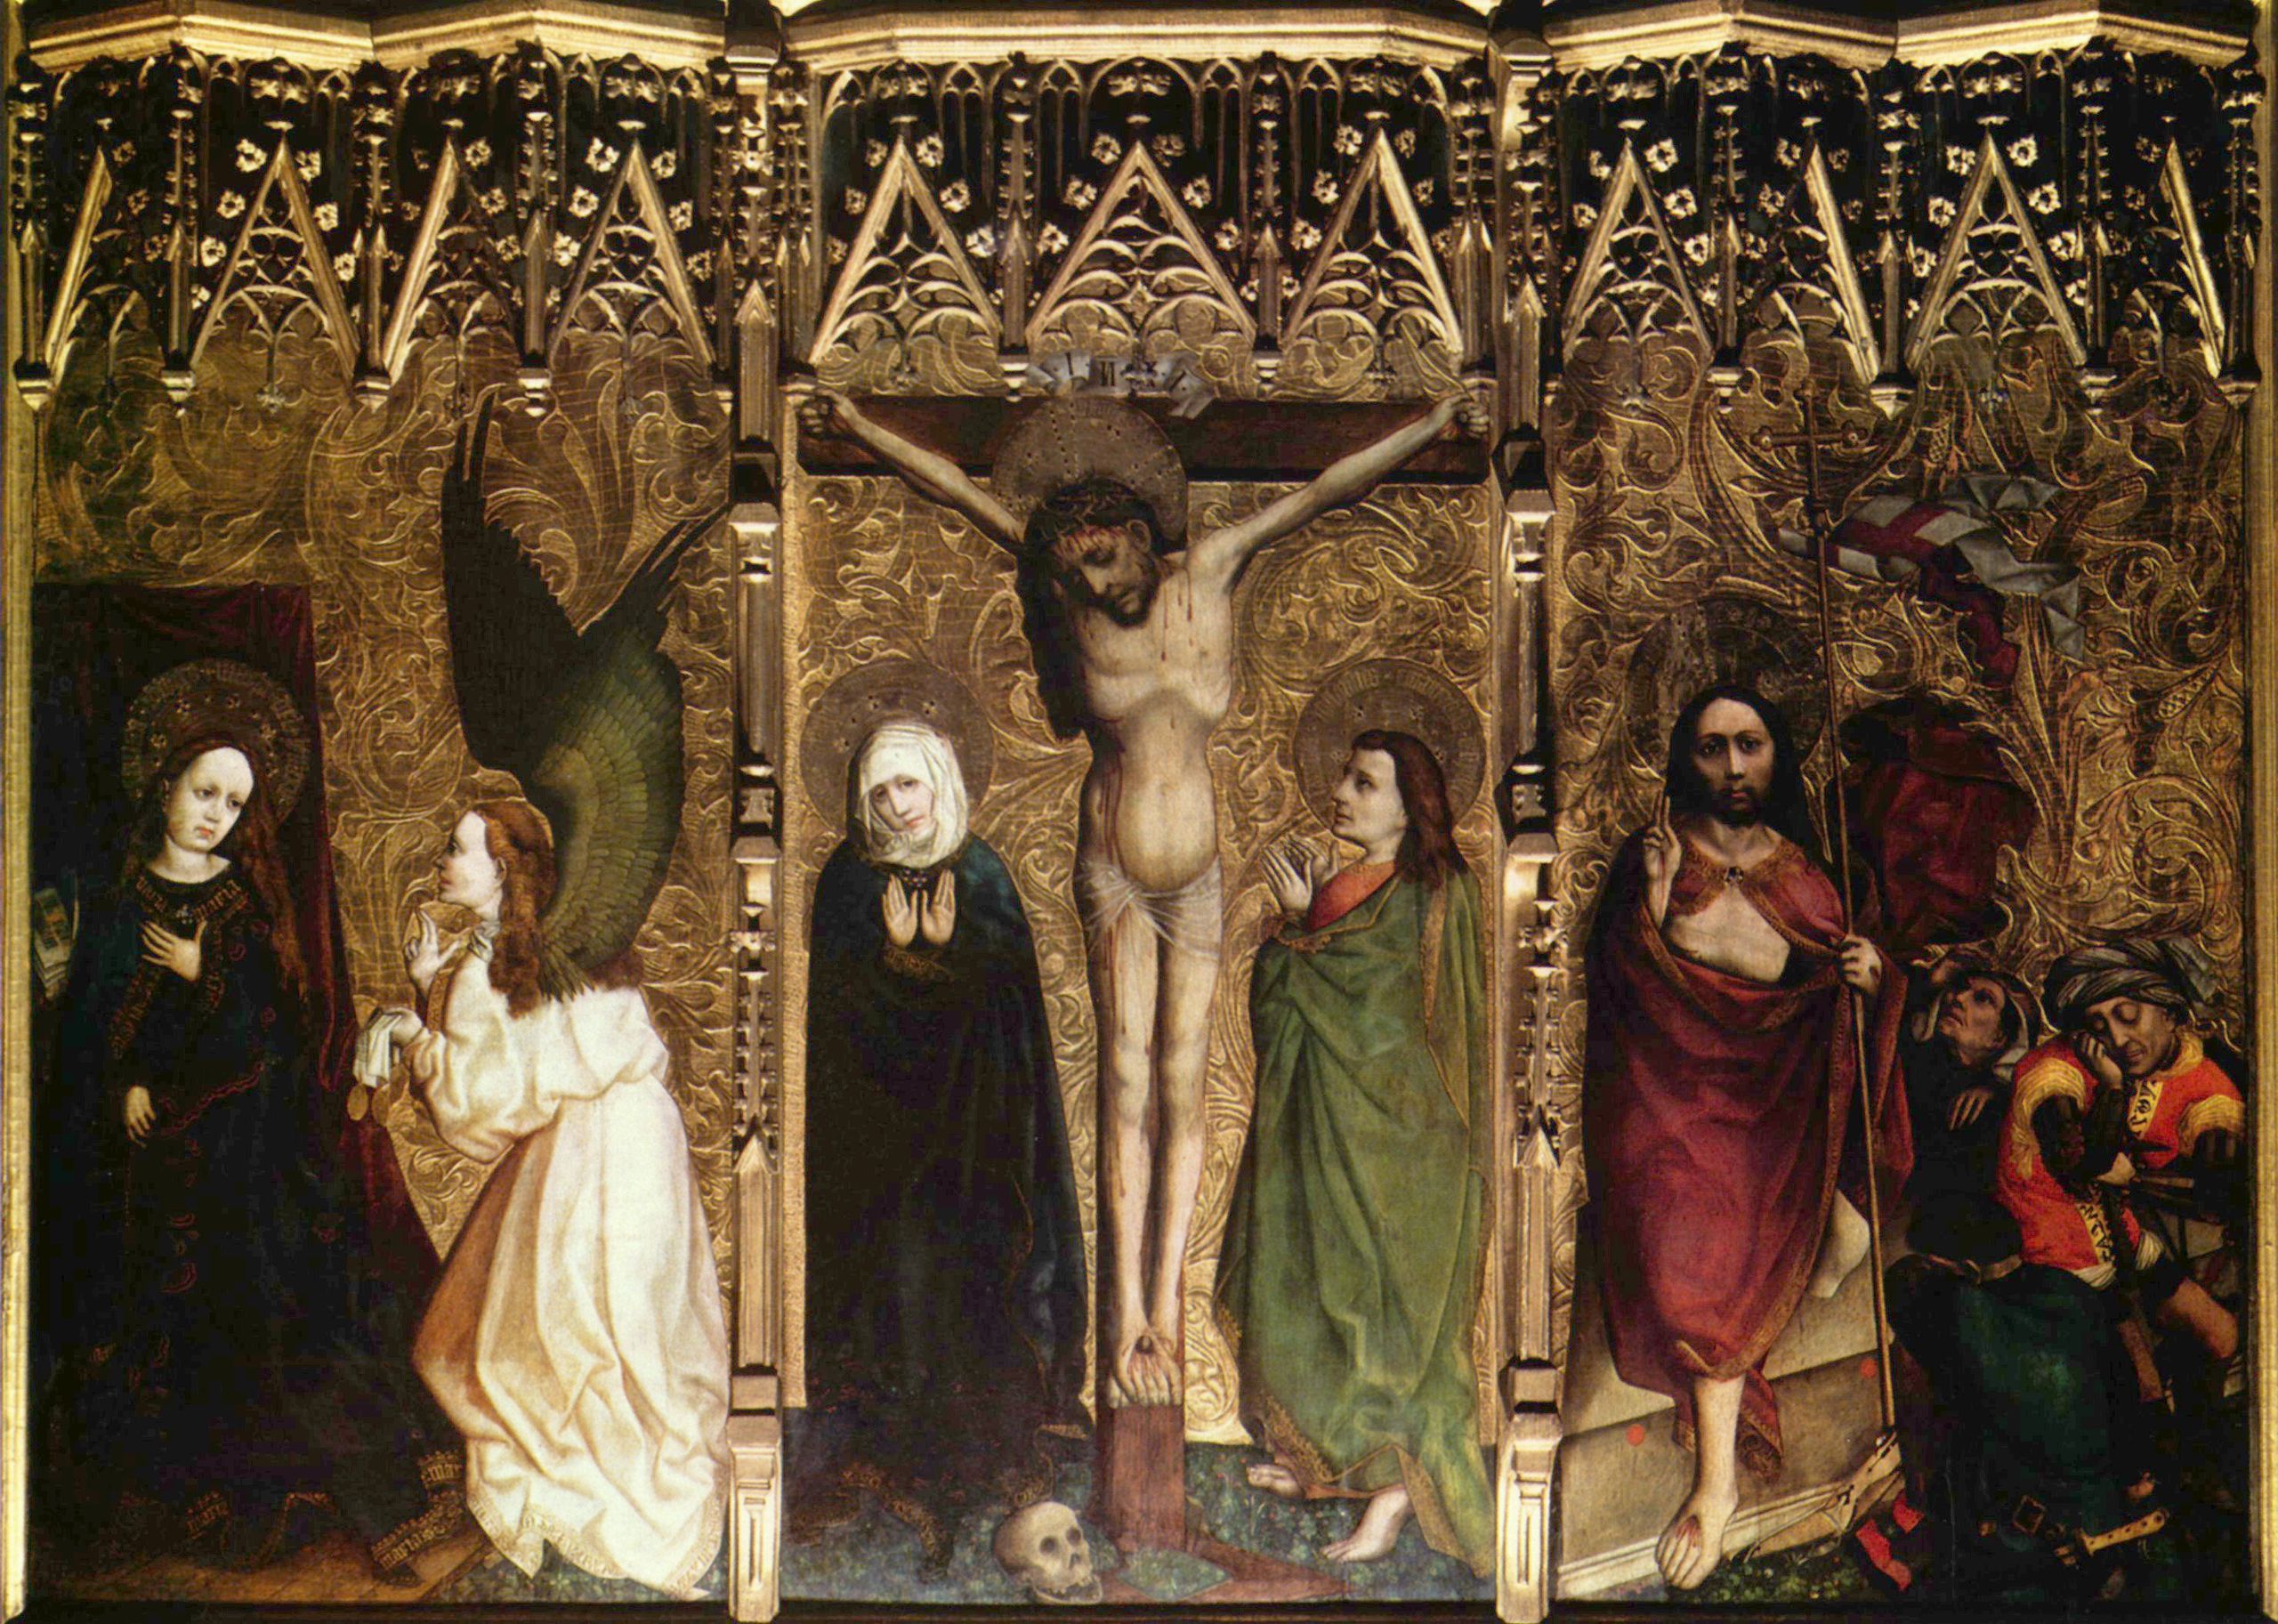 Meister des Tucher-Altars: Tucher-Altar, Mitteltafel, Szenen: Die Verkündigung an Maria sowie Kreuzigung und Auferstehung Christi